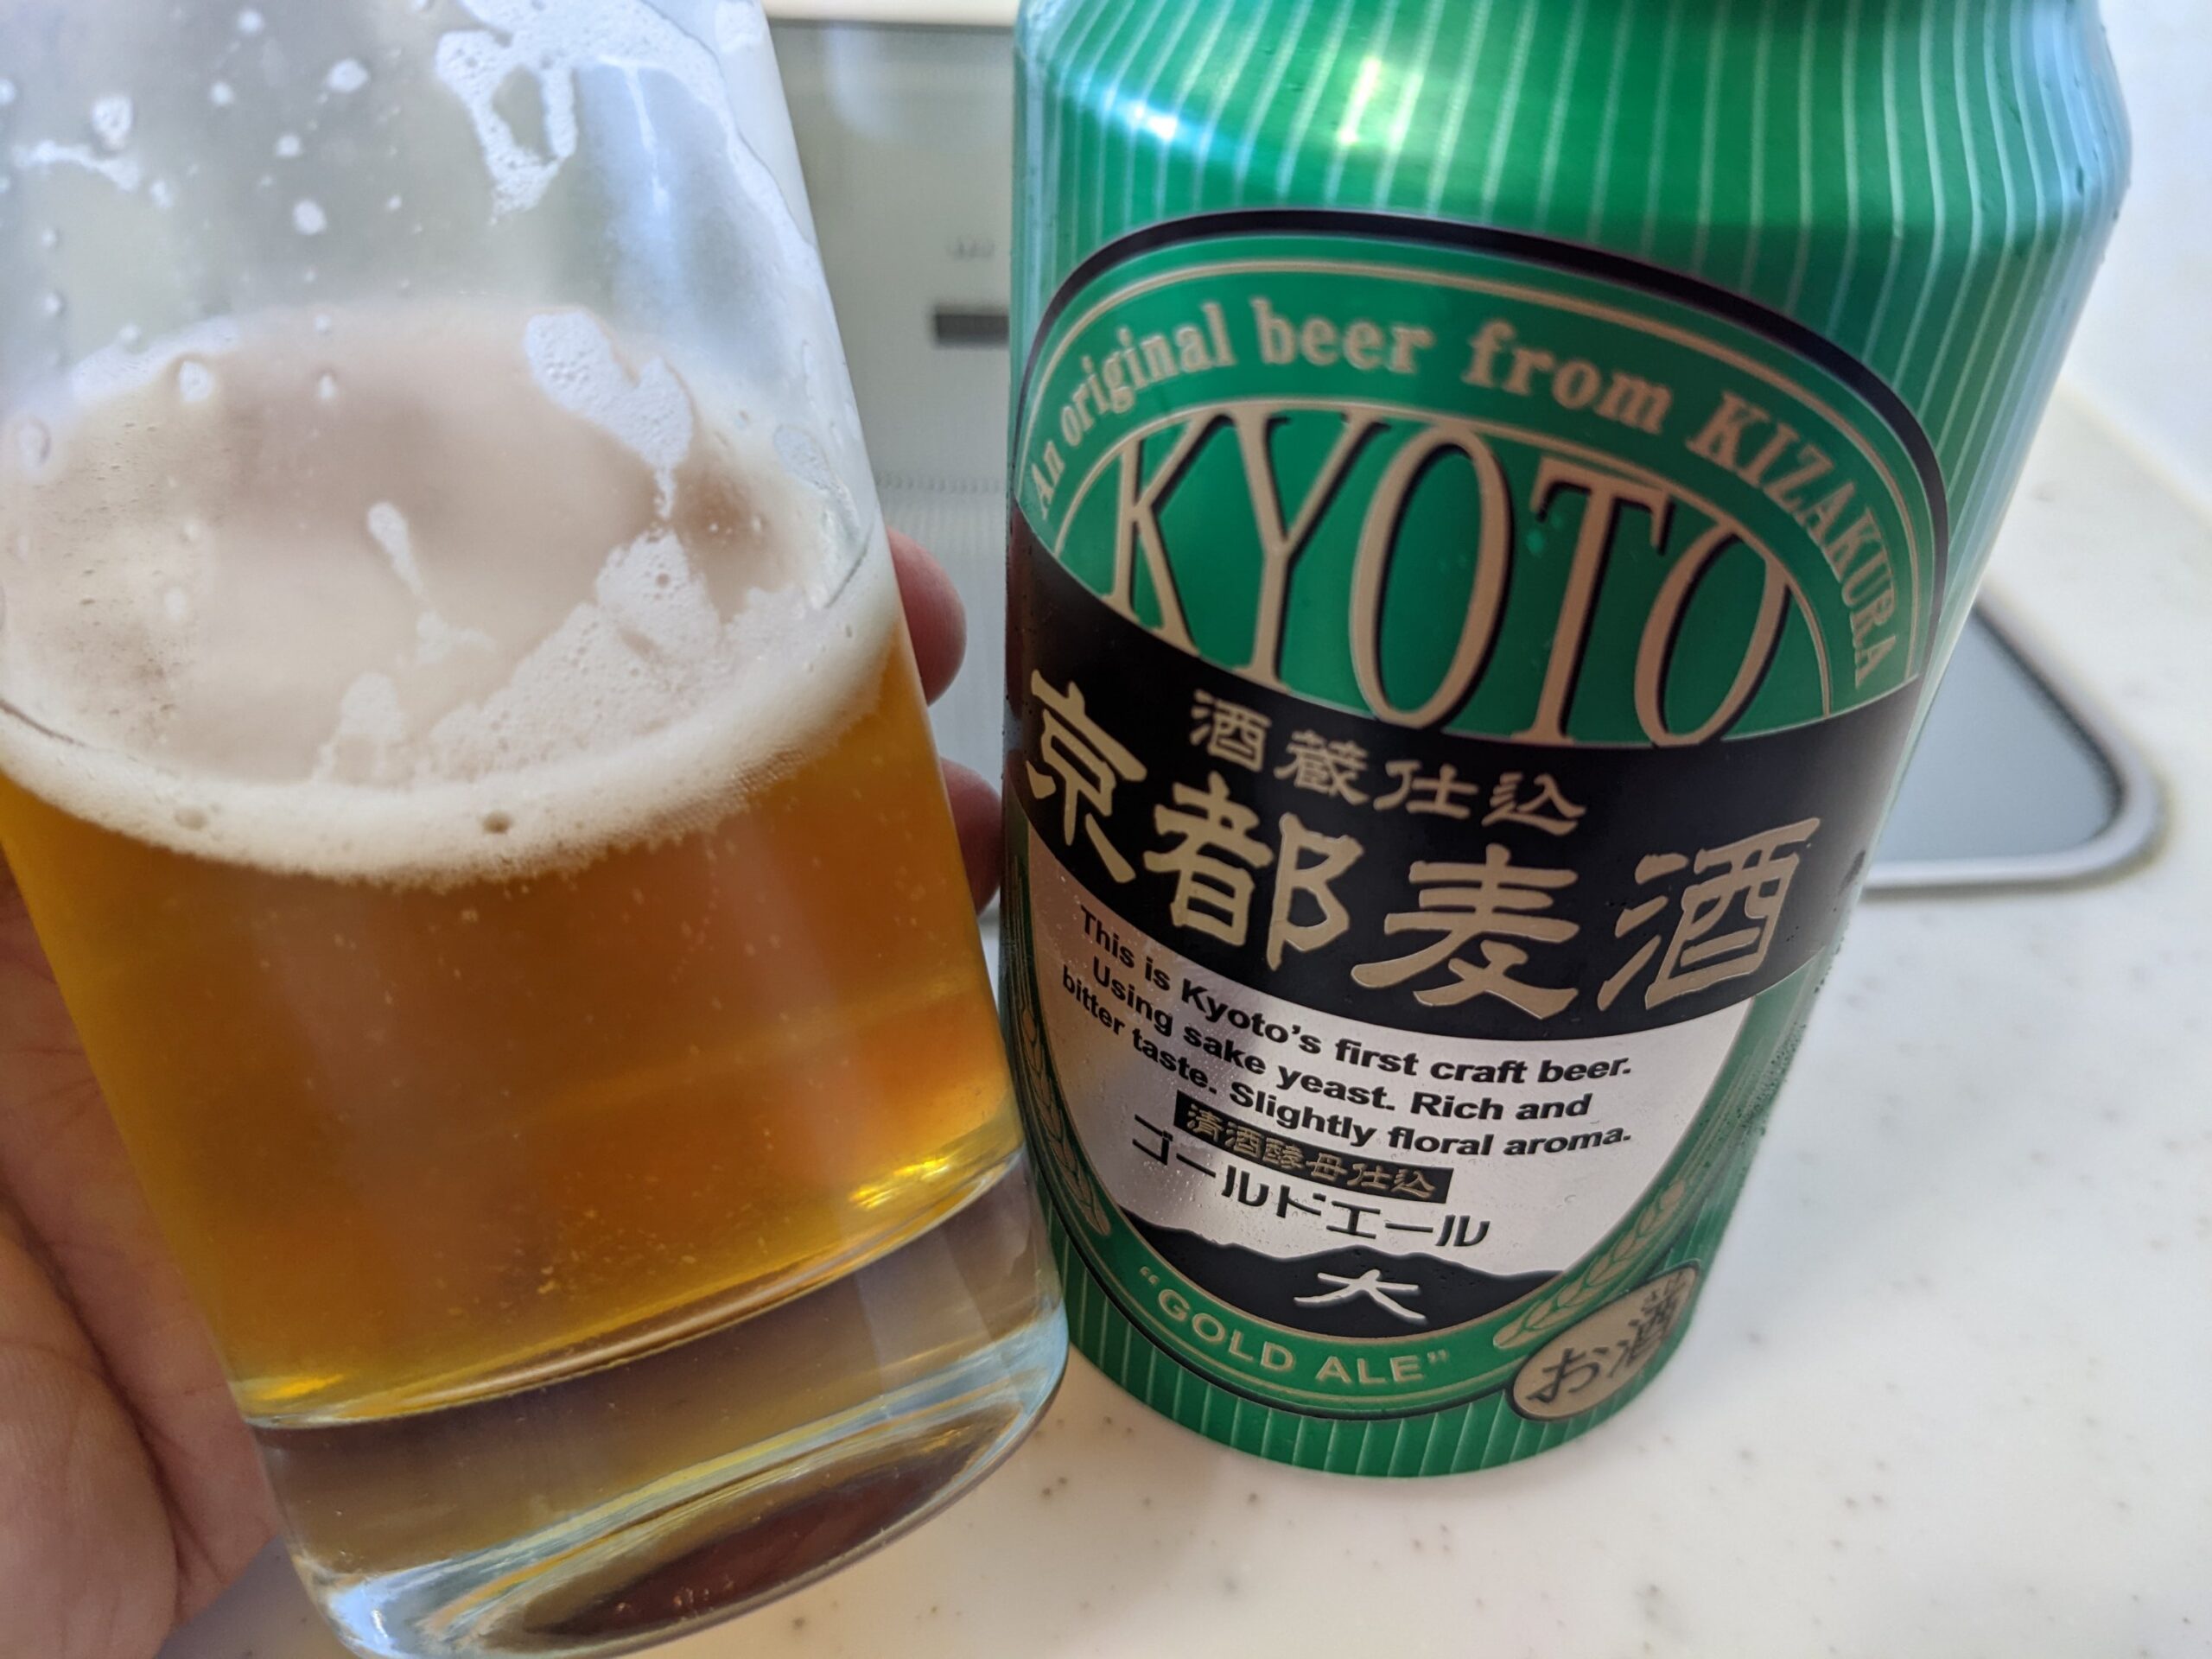 残り2割程のグラスに残った「京都麦酒ゴールドエール 」